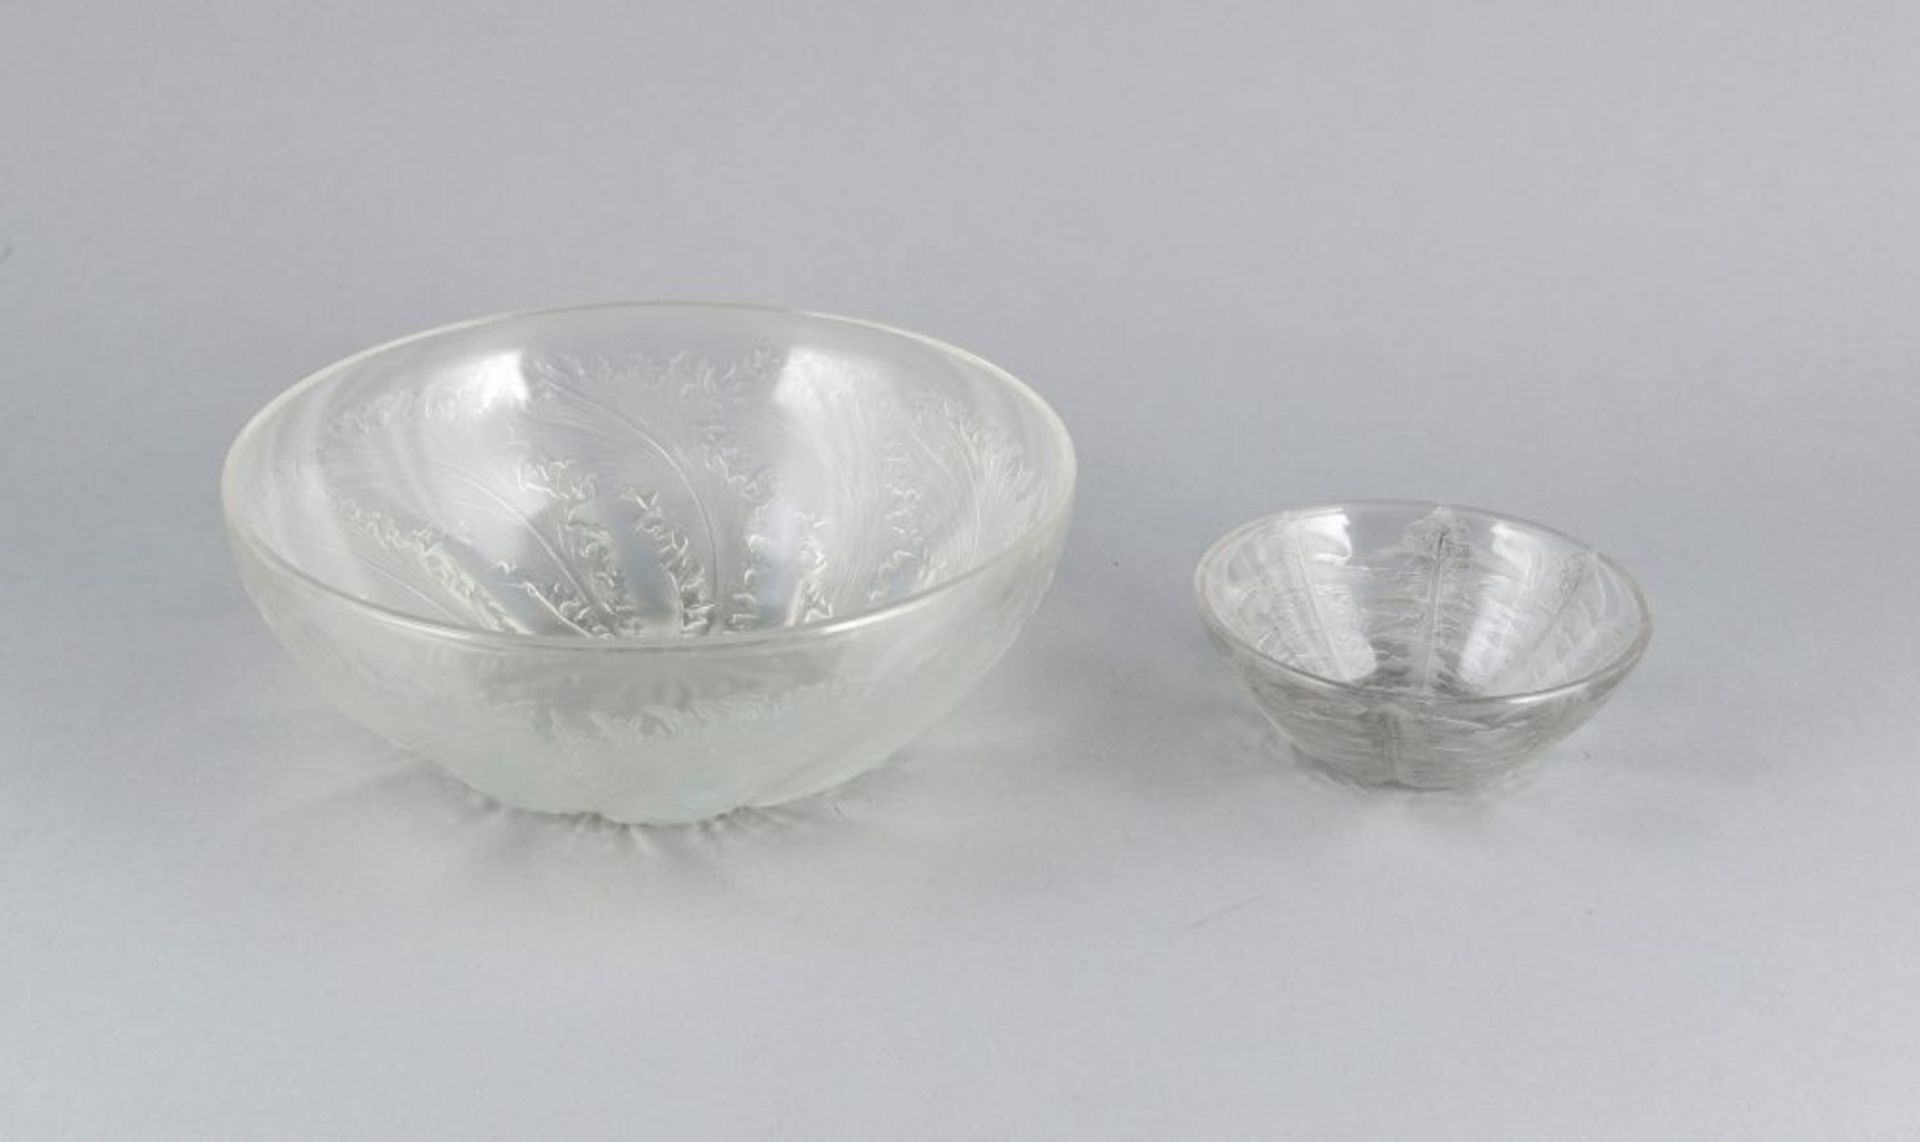 Zwei runde Schalen, Lalique, 2. H. 20. Jh., jeweils klares tlw. mattiertes Formglas, Wandung mit